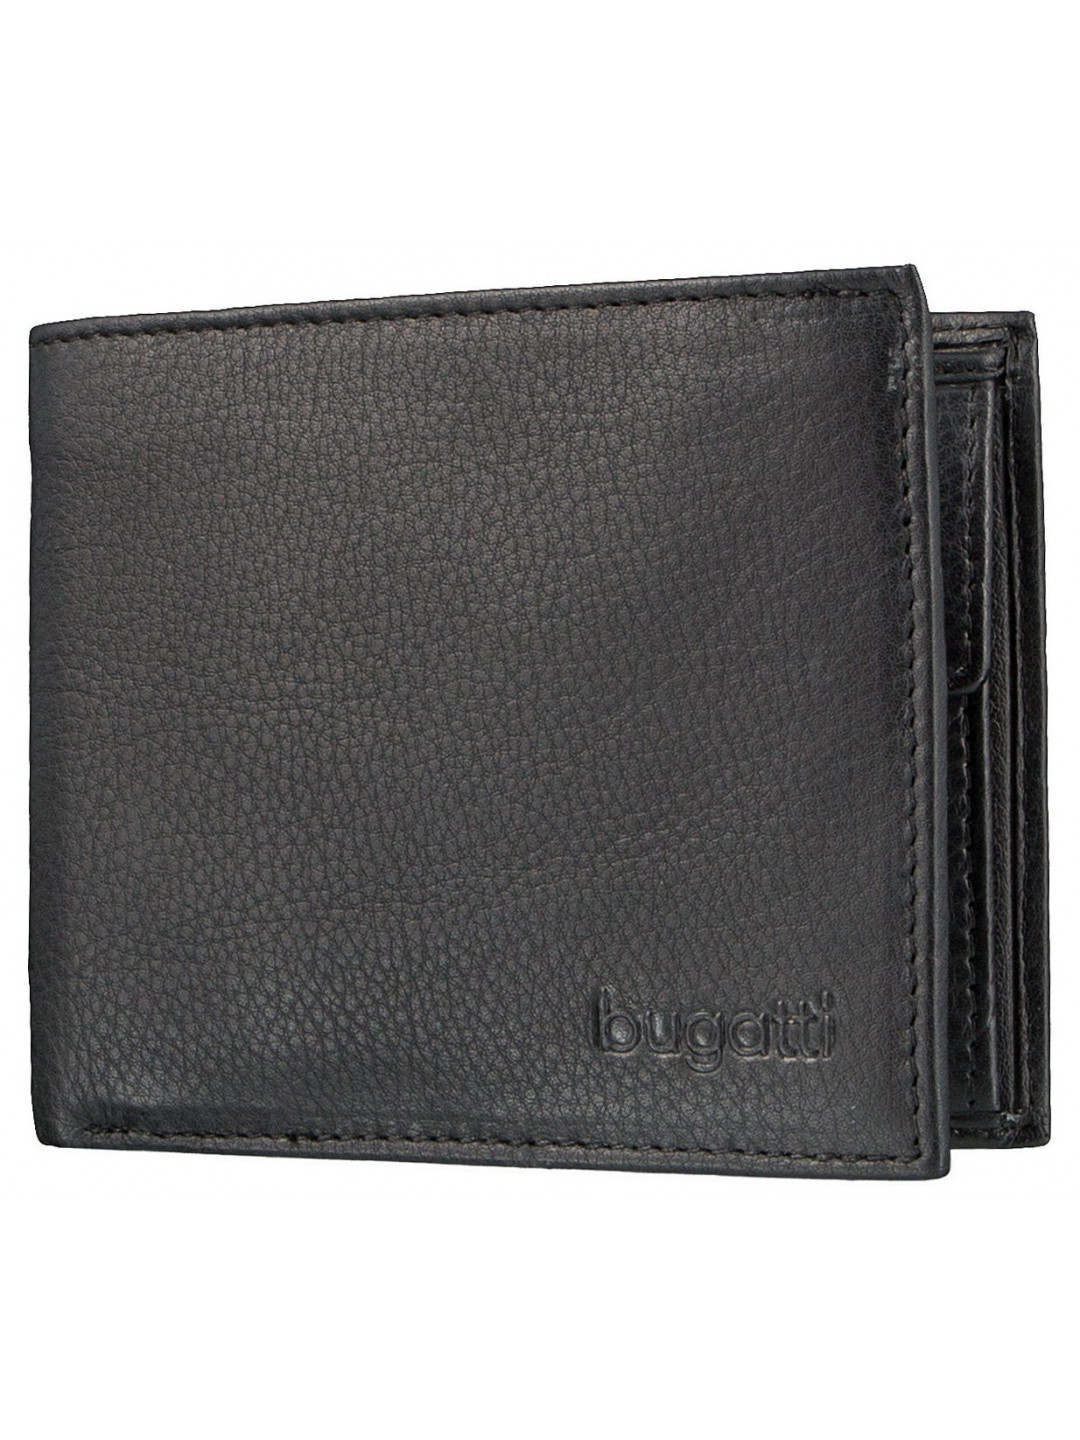 Bugatti Pánská kožená peněženka Sempre 49117901